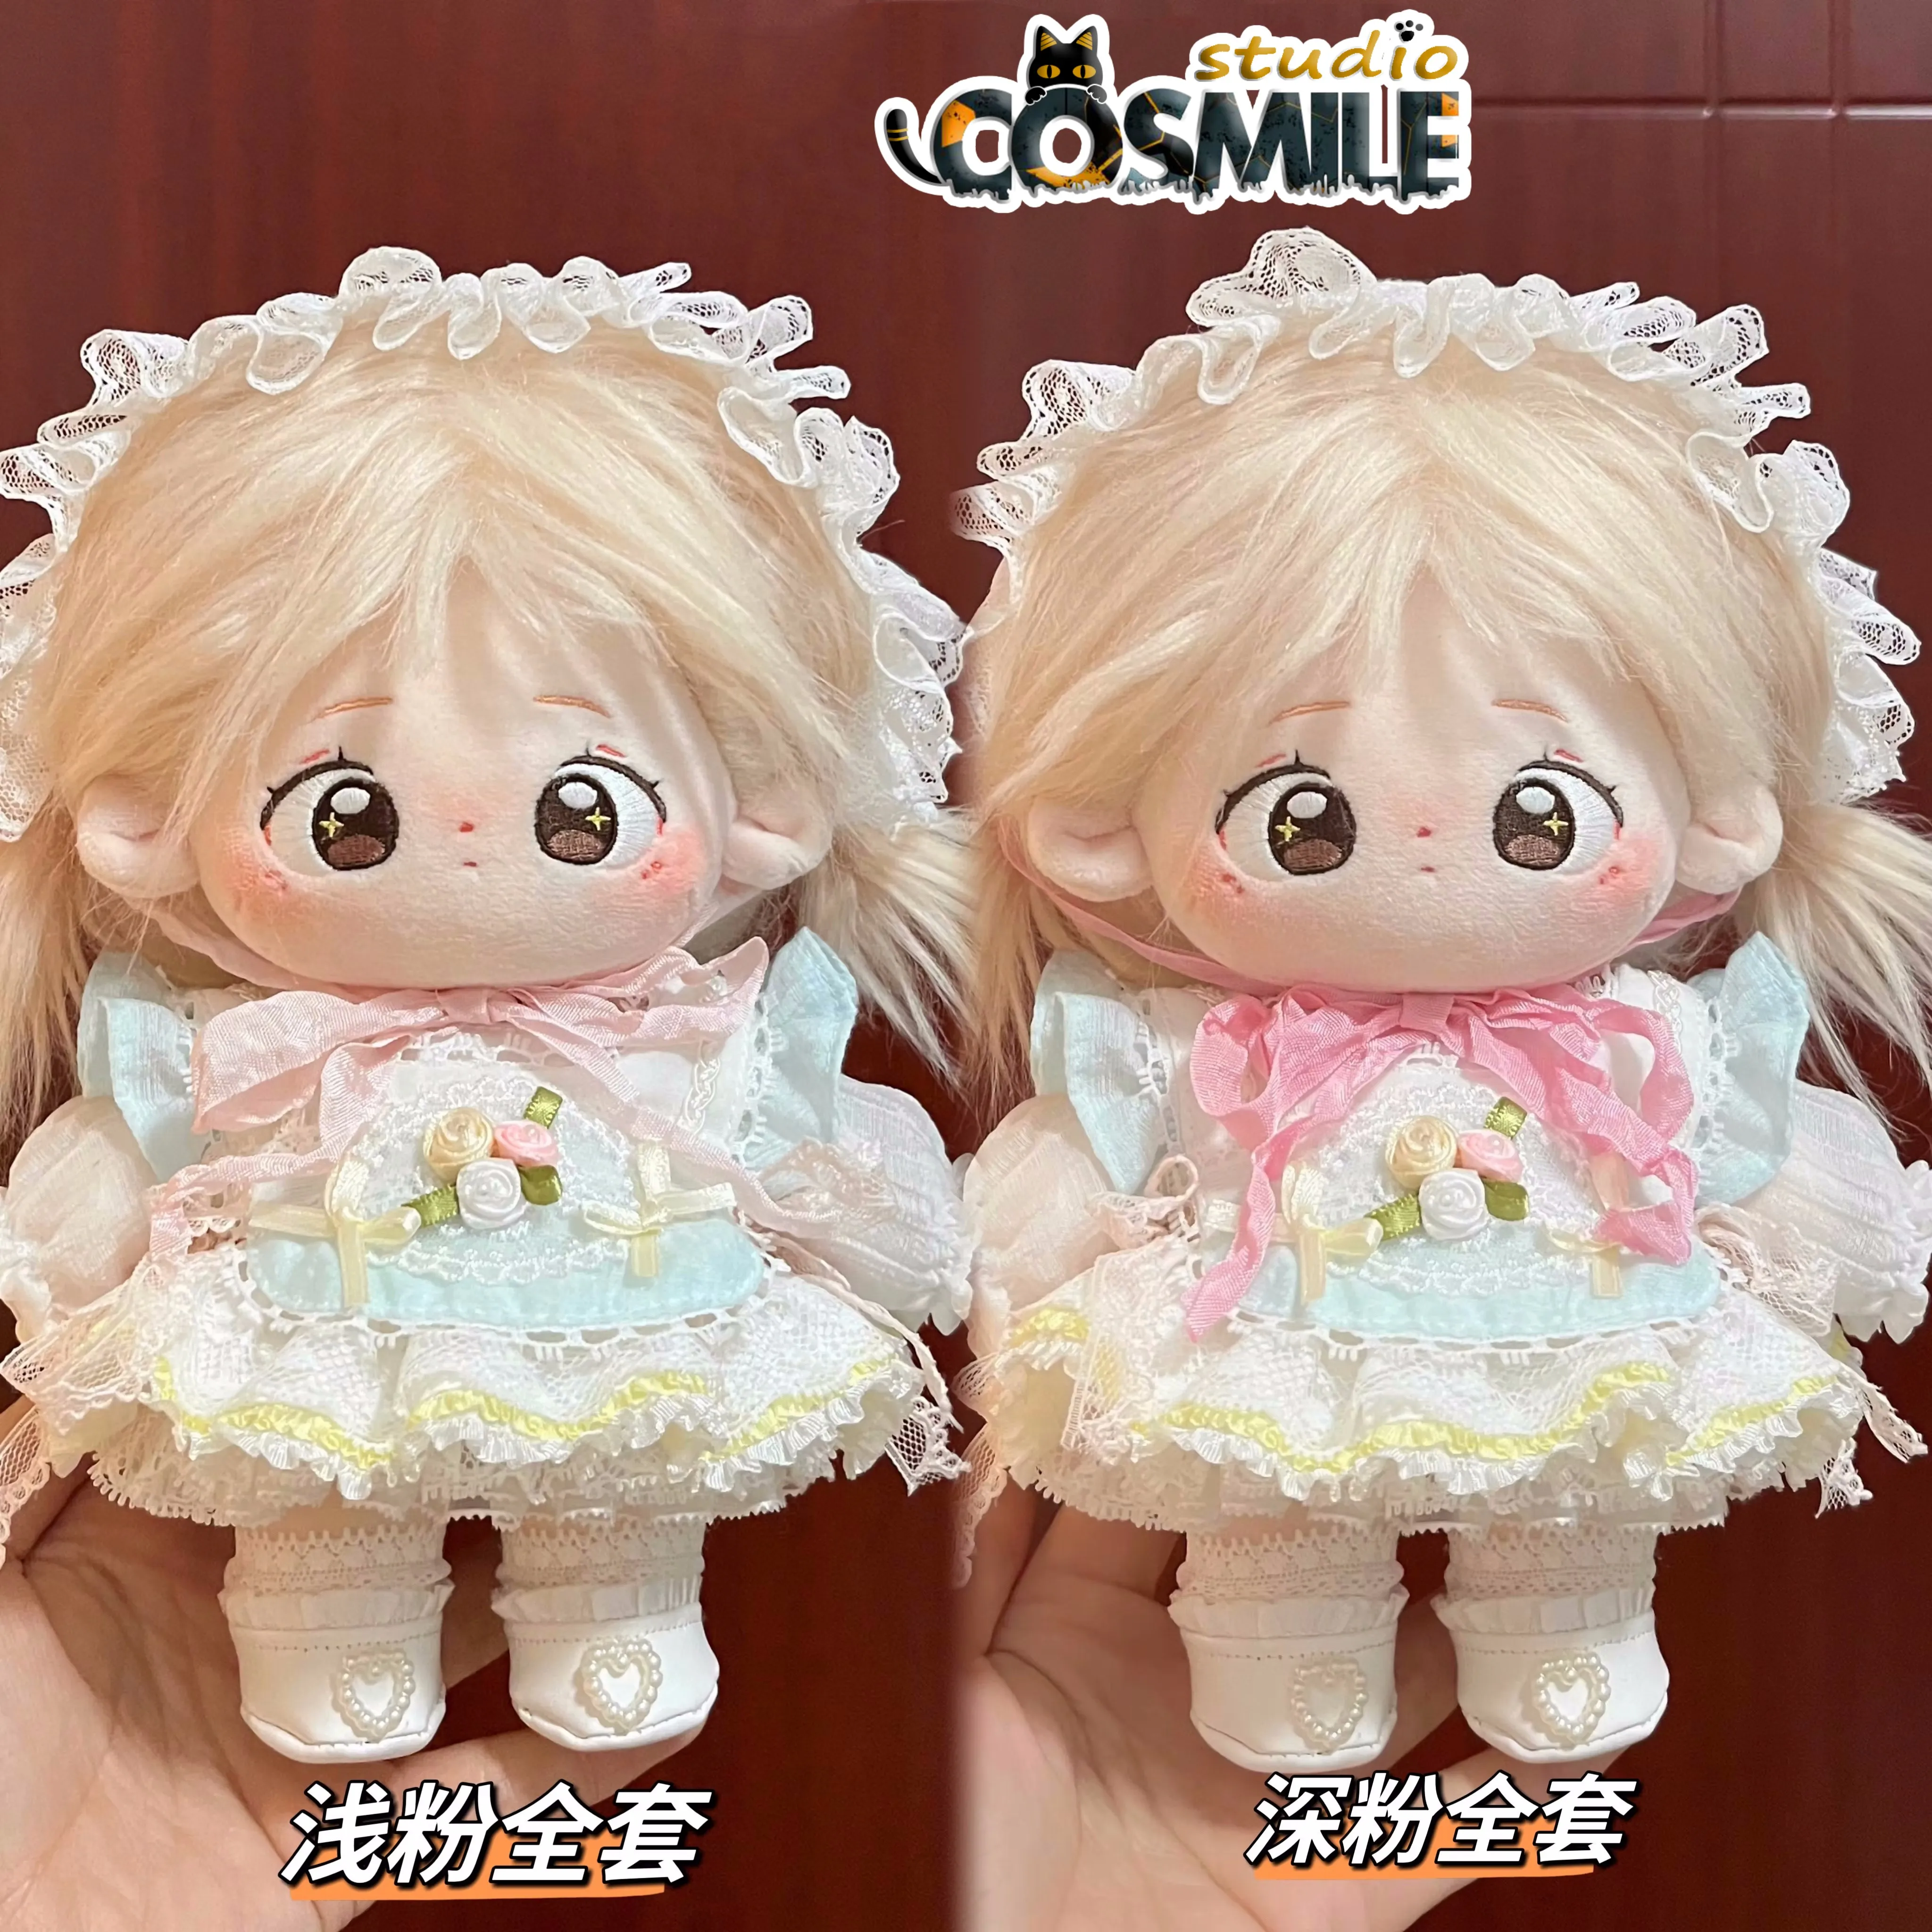 

Star Genki Idol Милая принцесса Лолита чай искусственное платье юбка костюм мягкая плюшевая игрушка 20 см 30 см Плюшевая Кукла Одежда PPS